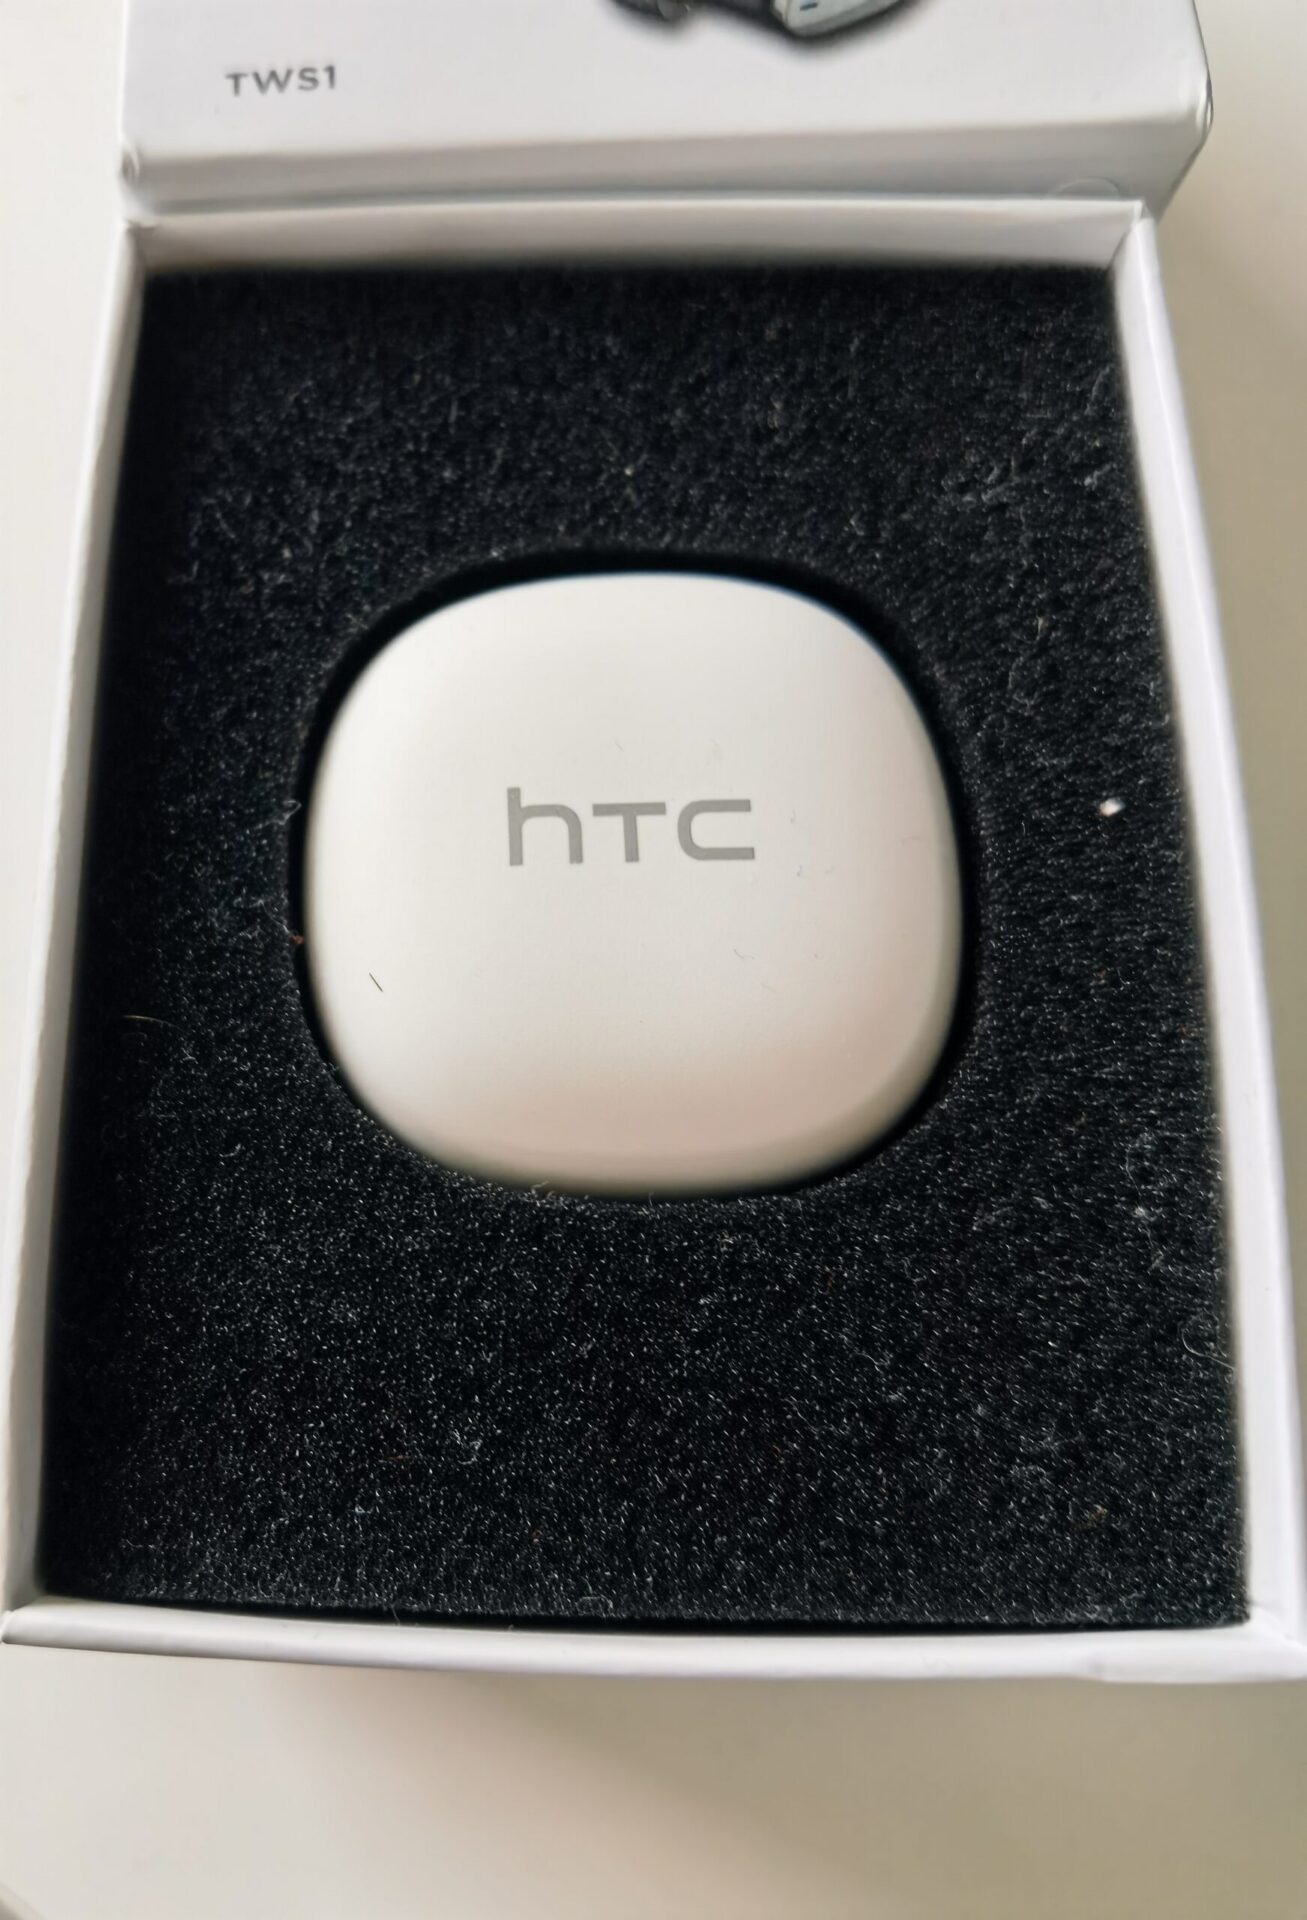 HTC Wireless Earbuds - Recenzja. Tanio i dobrze?